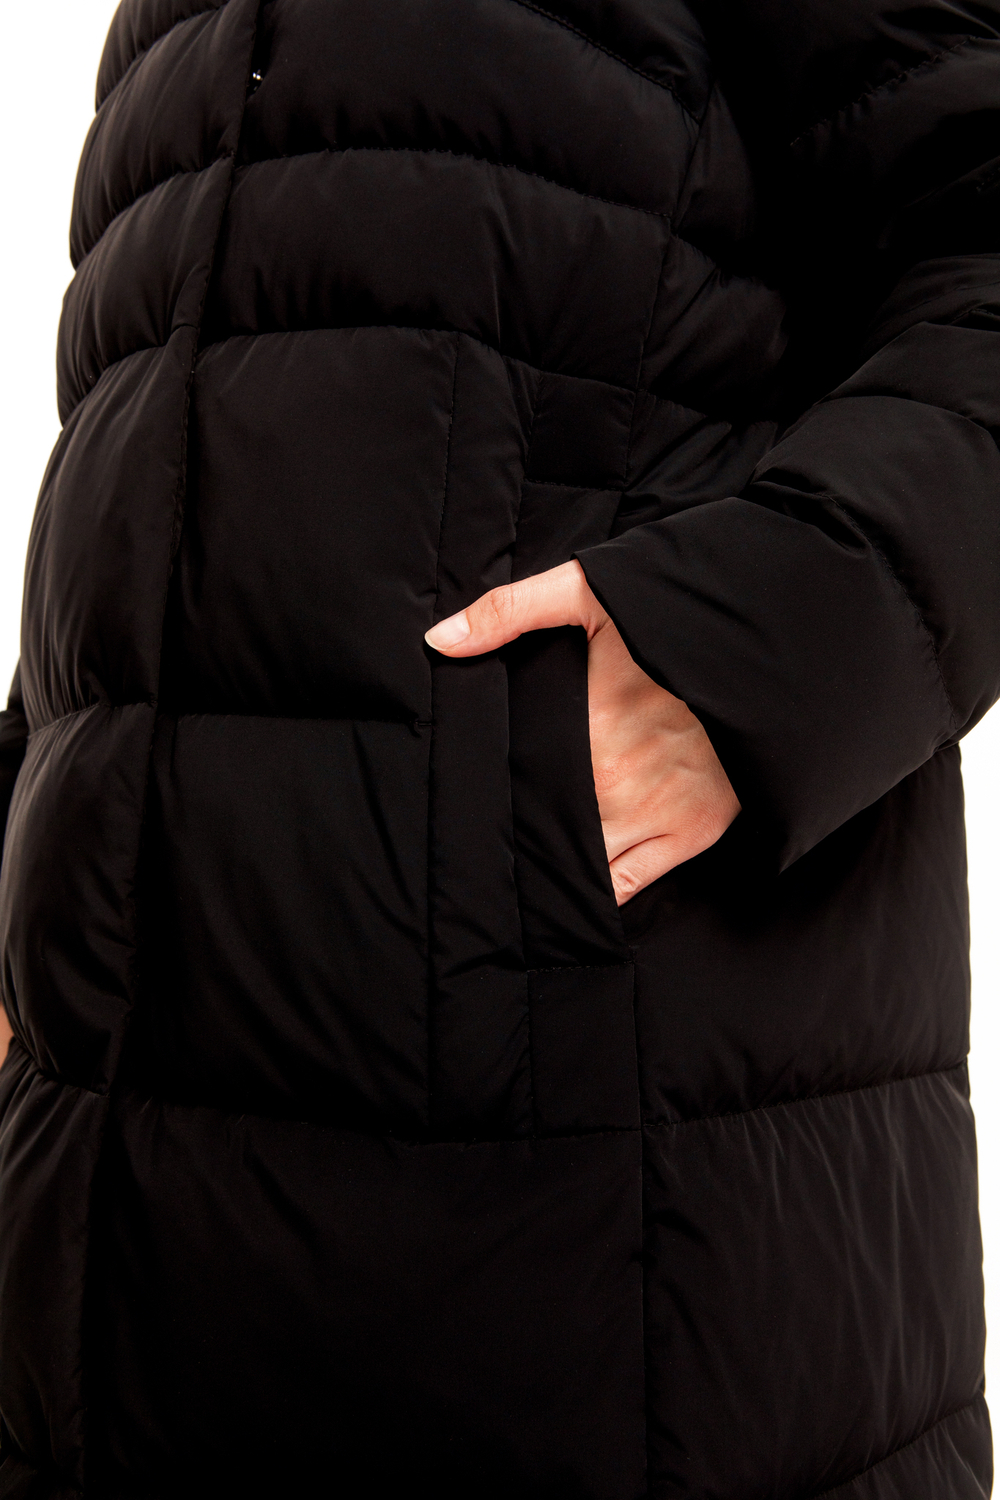 313.FW23.001S пальто женское BLACK